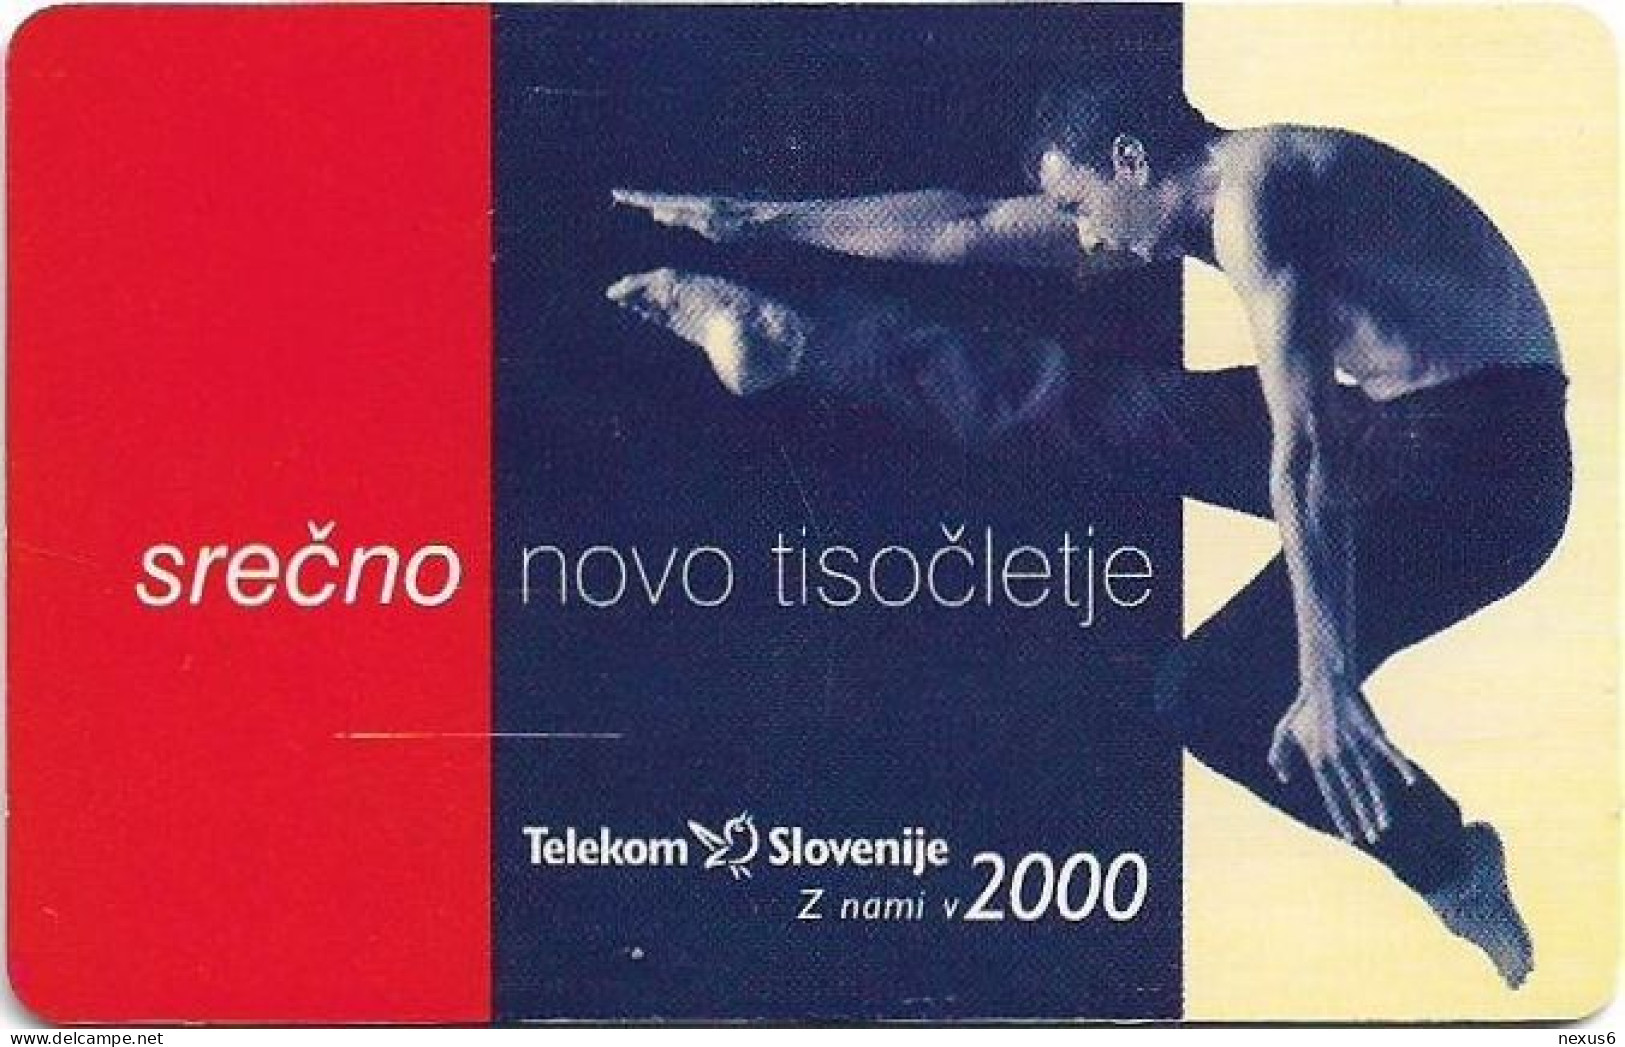 Slovenia - Telekom Slovenije - Vesele Božične Praznike In Srečno Novo Leto, Gem5 Red, 12.1999, 300Units, 3.985ex, Used - Slovénie